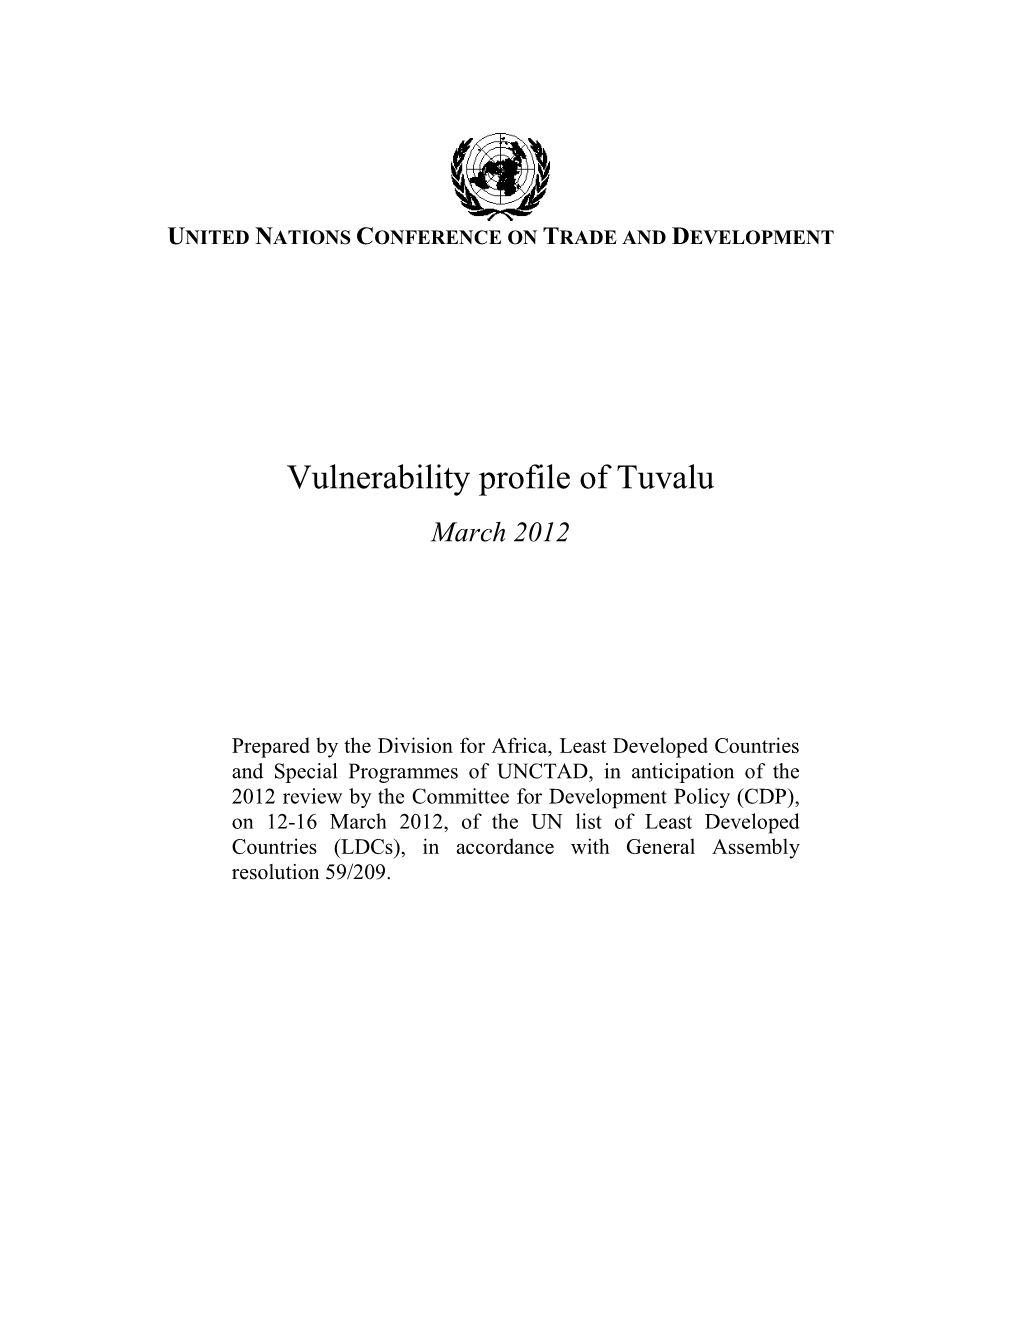 Vulnerability Profile of Tuvalu March 2012